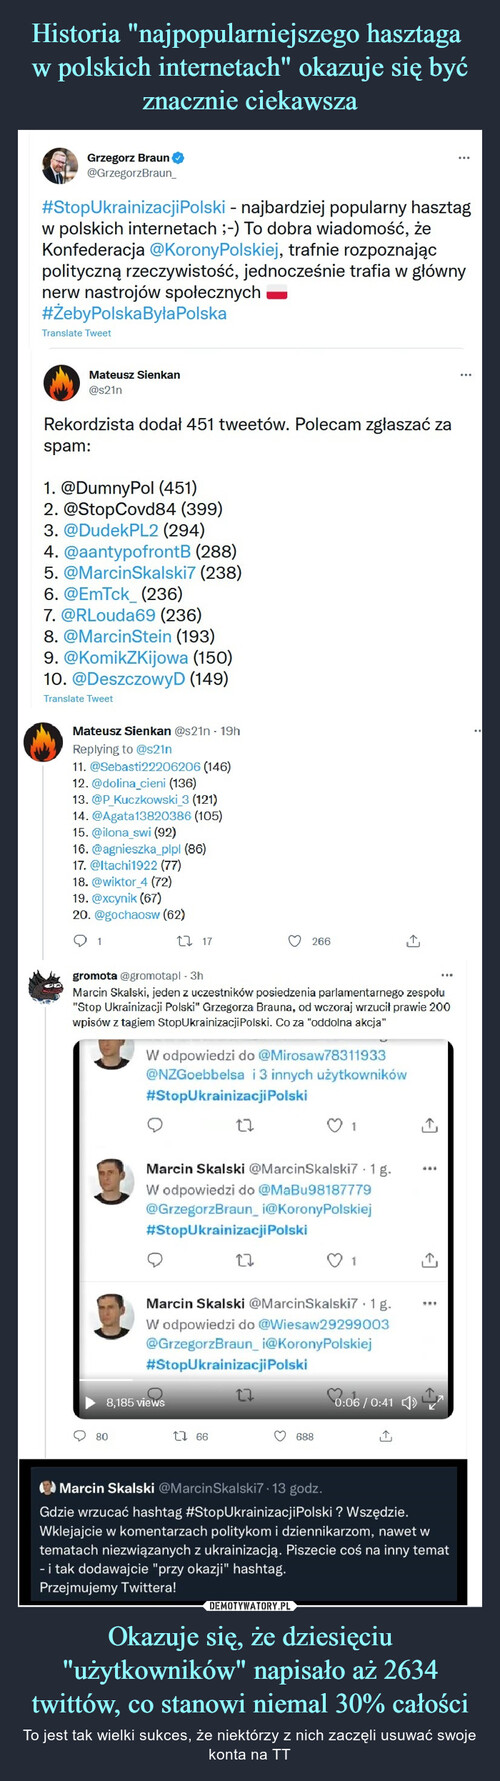 Historia "najpopularniejszego hasztaga 
w polskich internetach" okazuje się być znacznie ciekawsza Okazuje się, że dziesięciu "użytkowników" napisało aż 2634 twittów, co stanowi niemal 30% całości